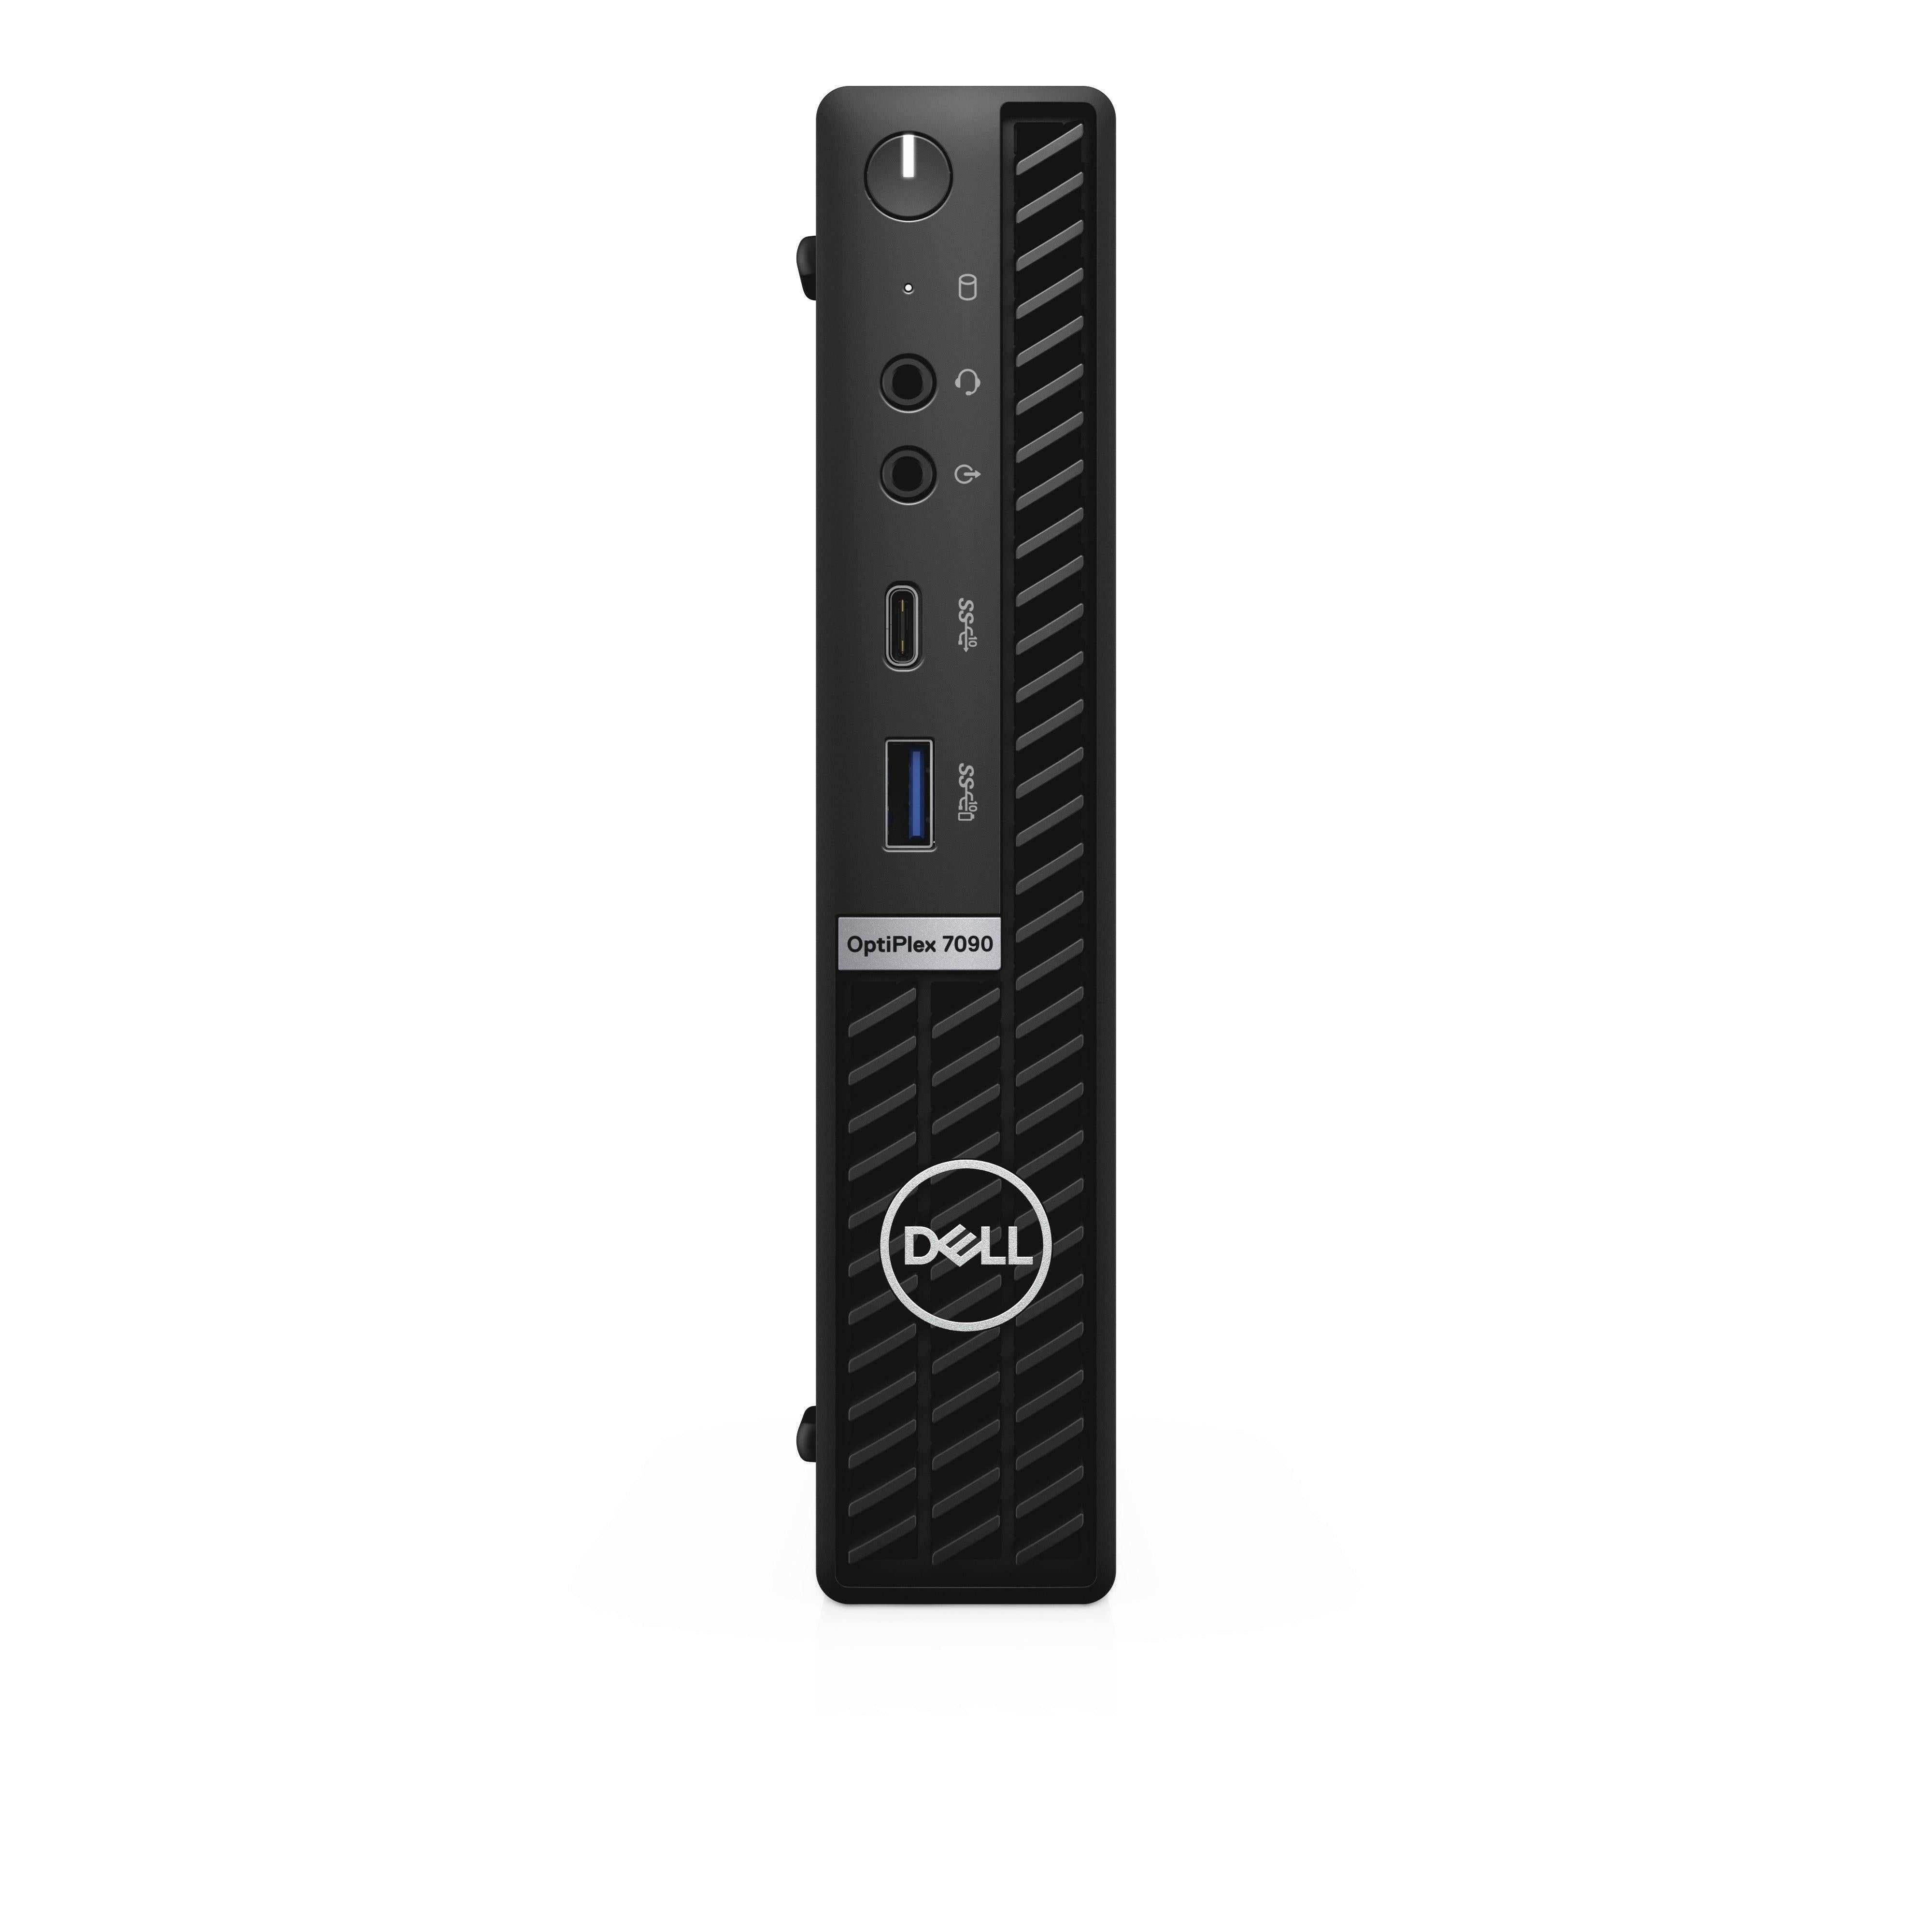 DELL, Dell Optiplex 7090 Ddr4-Sdram I7-10700T Mff Intel® Core™ I7 16 Gb 256 Gb Ssd Windows 10 Pro Mini Pc Black